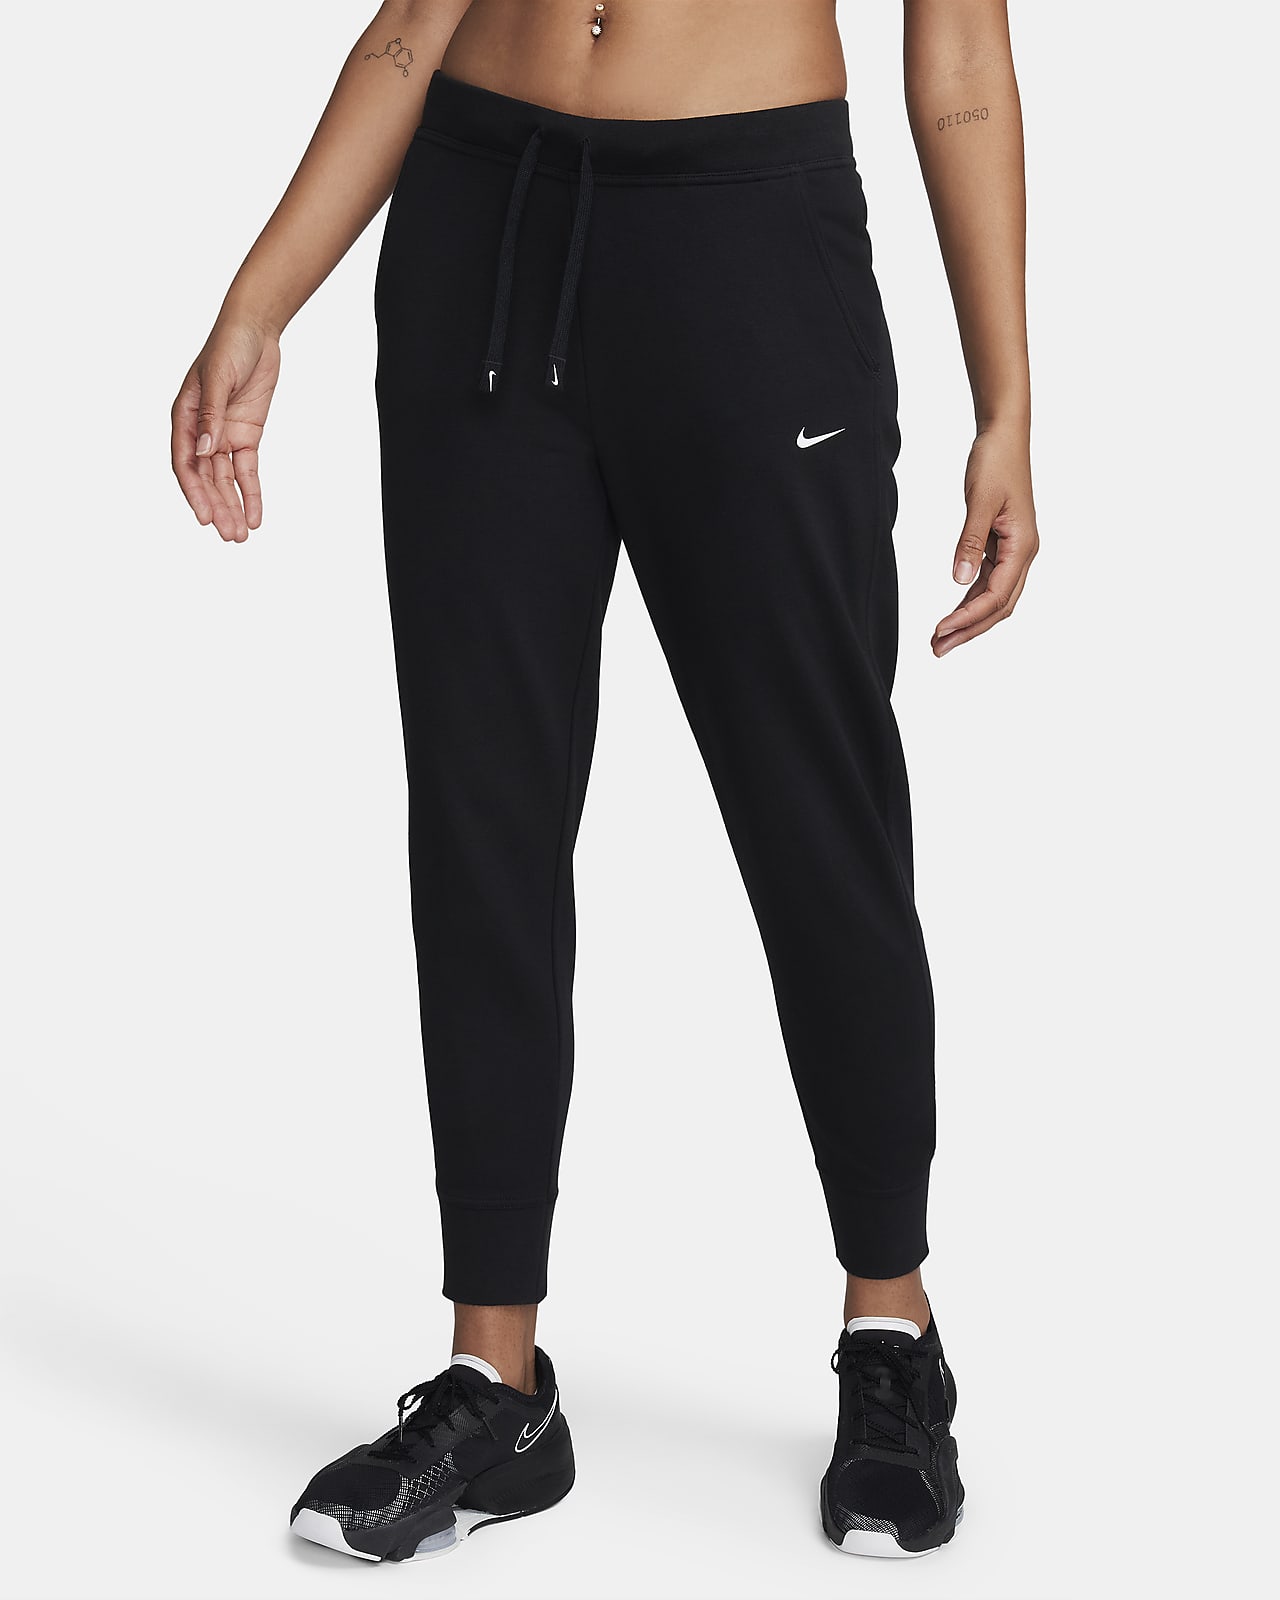 Nike Dri-FIT Get Fit Women's Training 